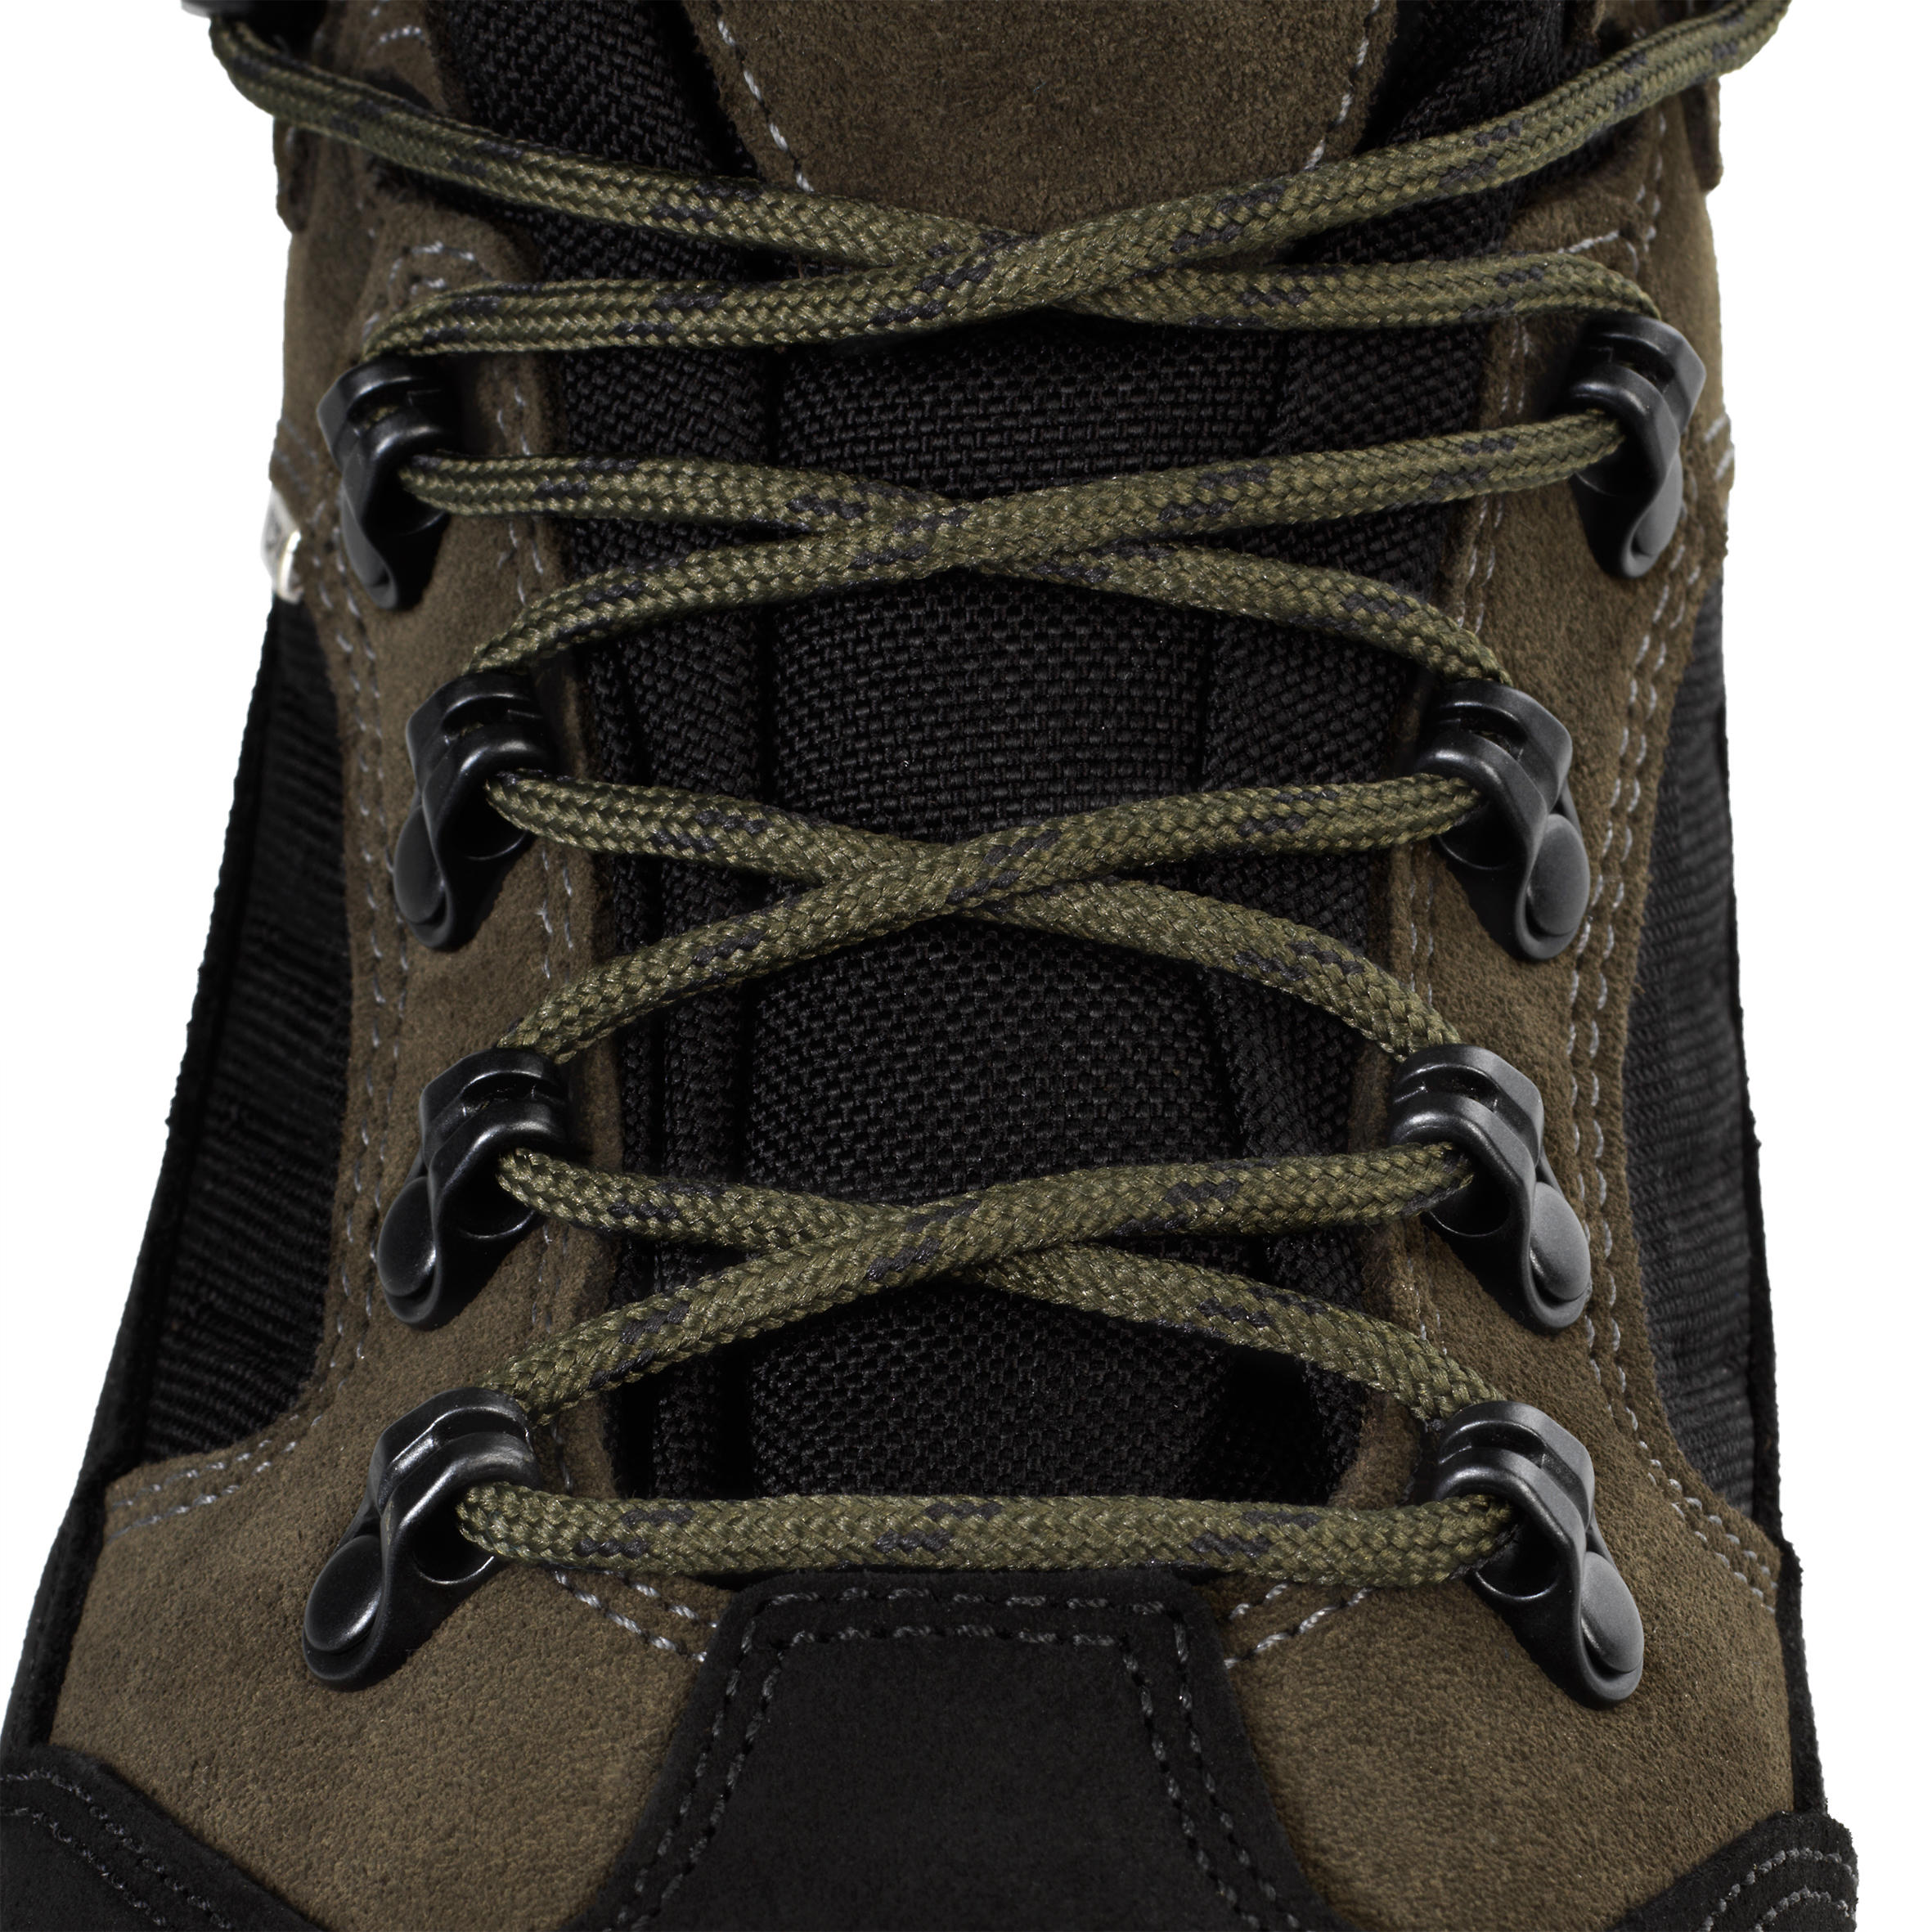 Waterproof Boots - Brown 7/7